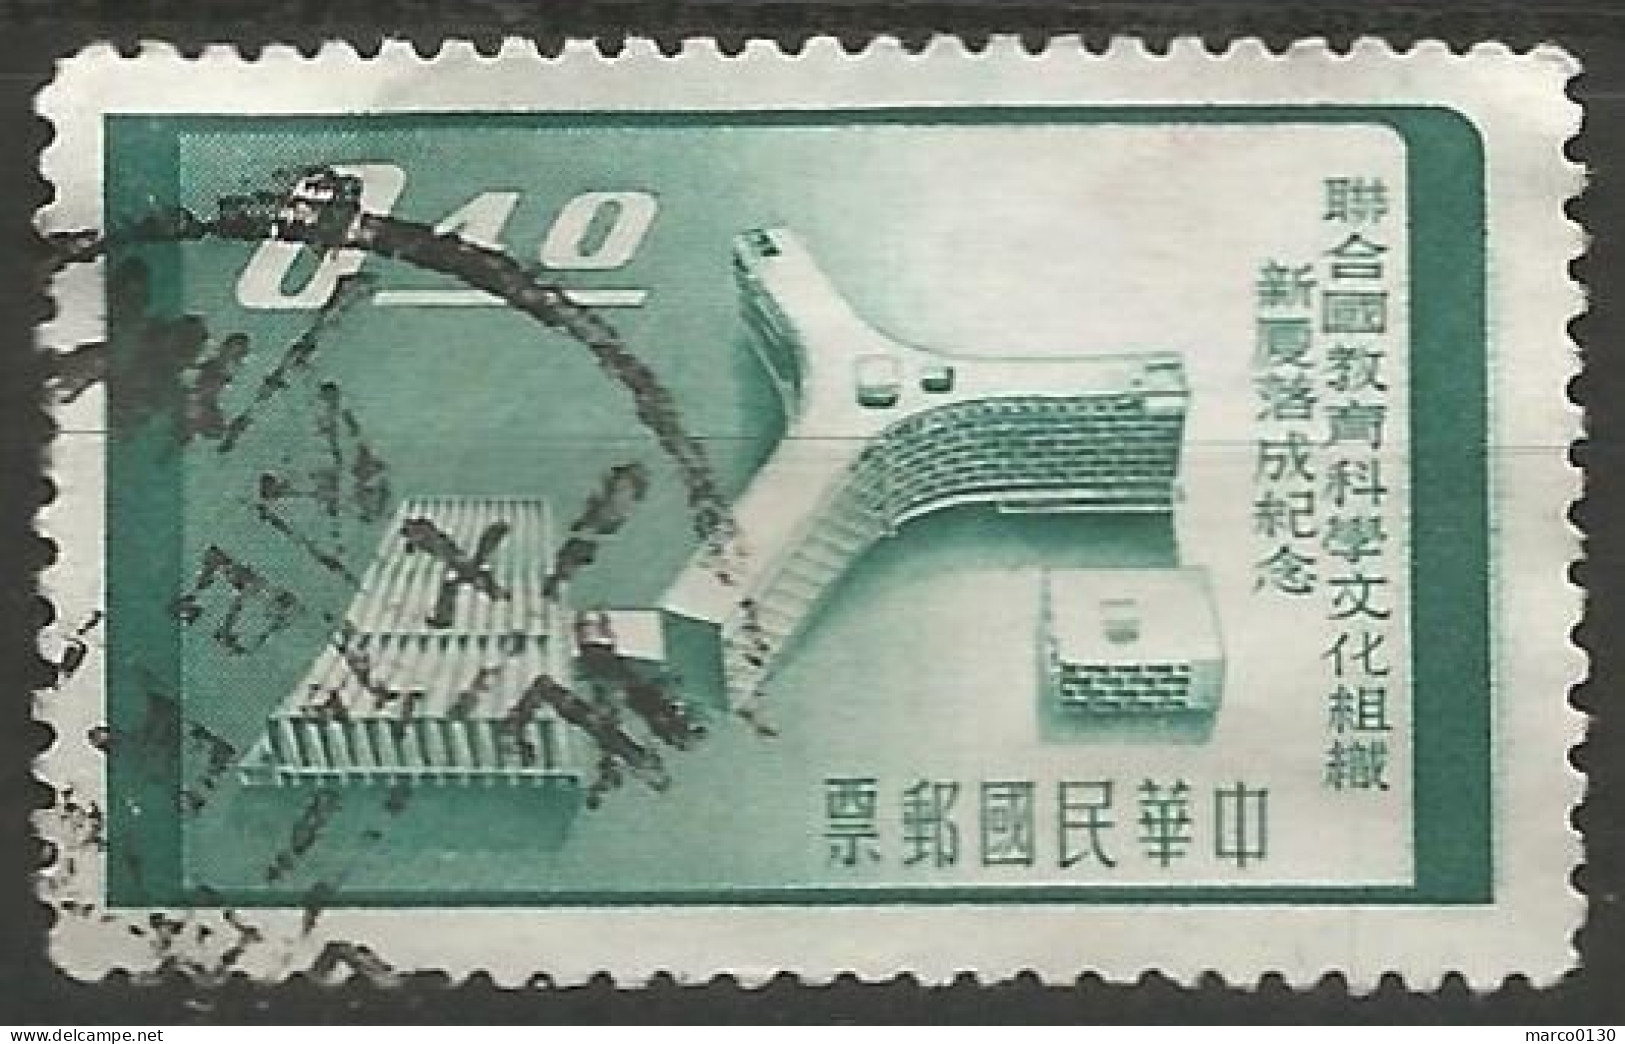 FORMOSE (TAIWAN) N° 271 + N° 272 + N° 273 + N° 274 OBLITERE - Used Stamps